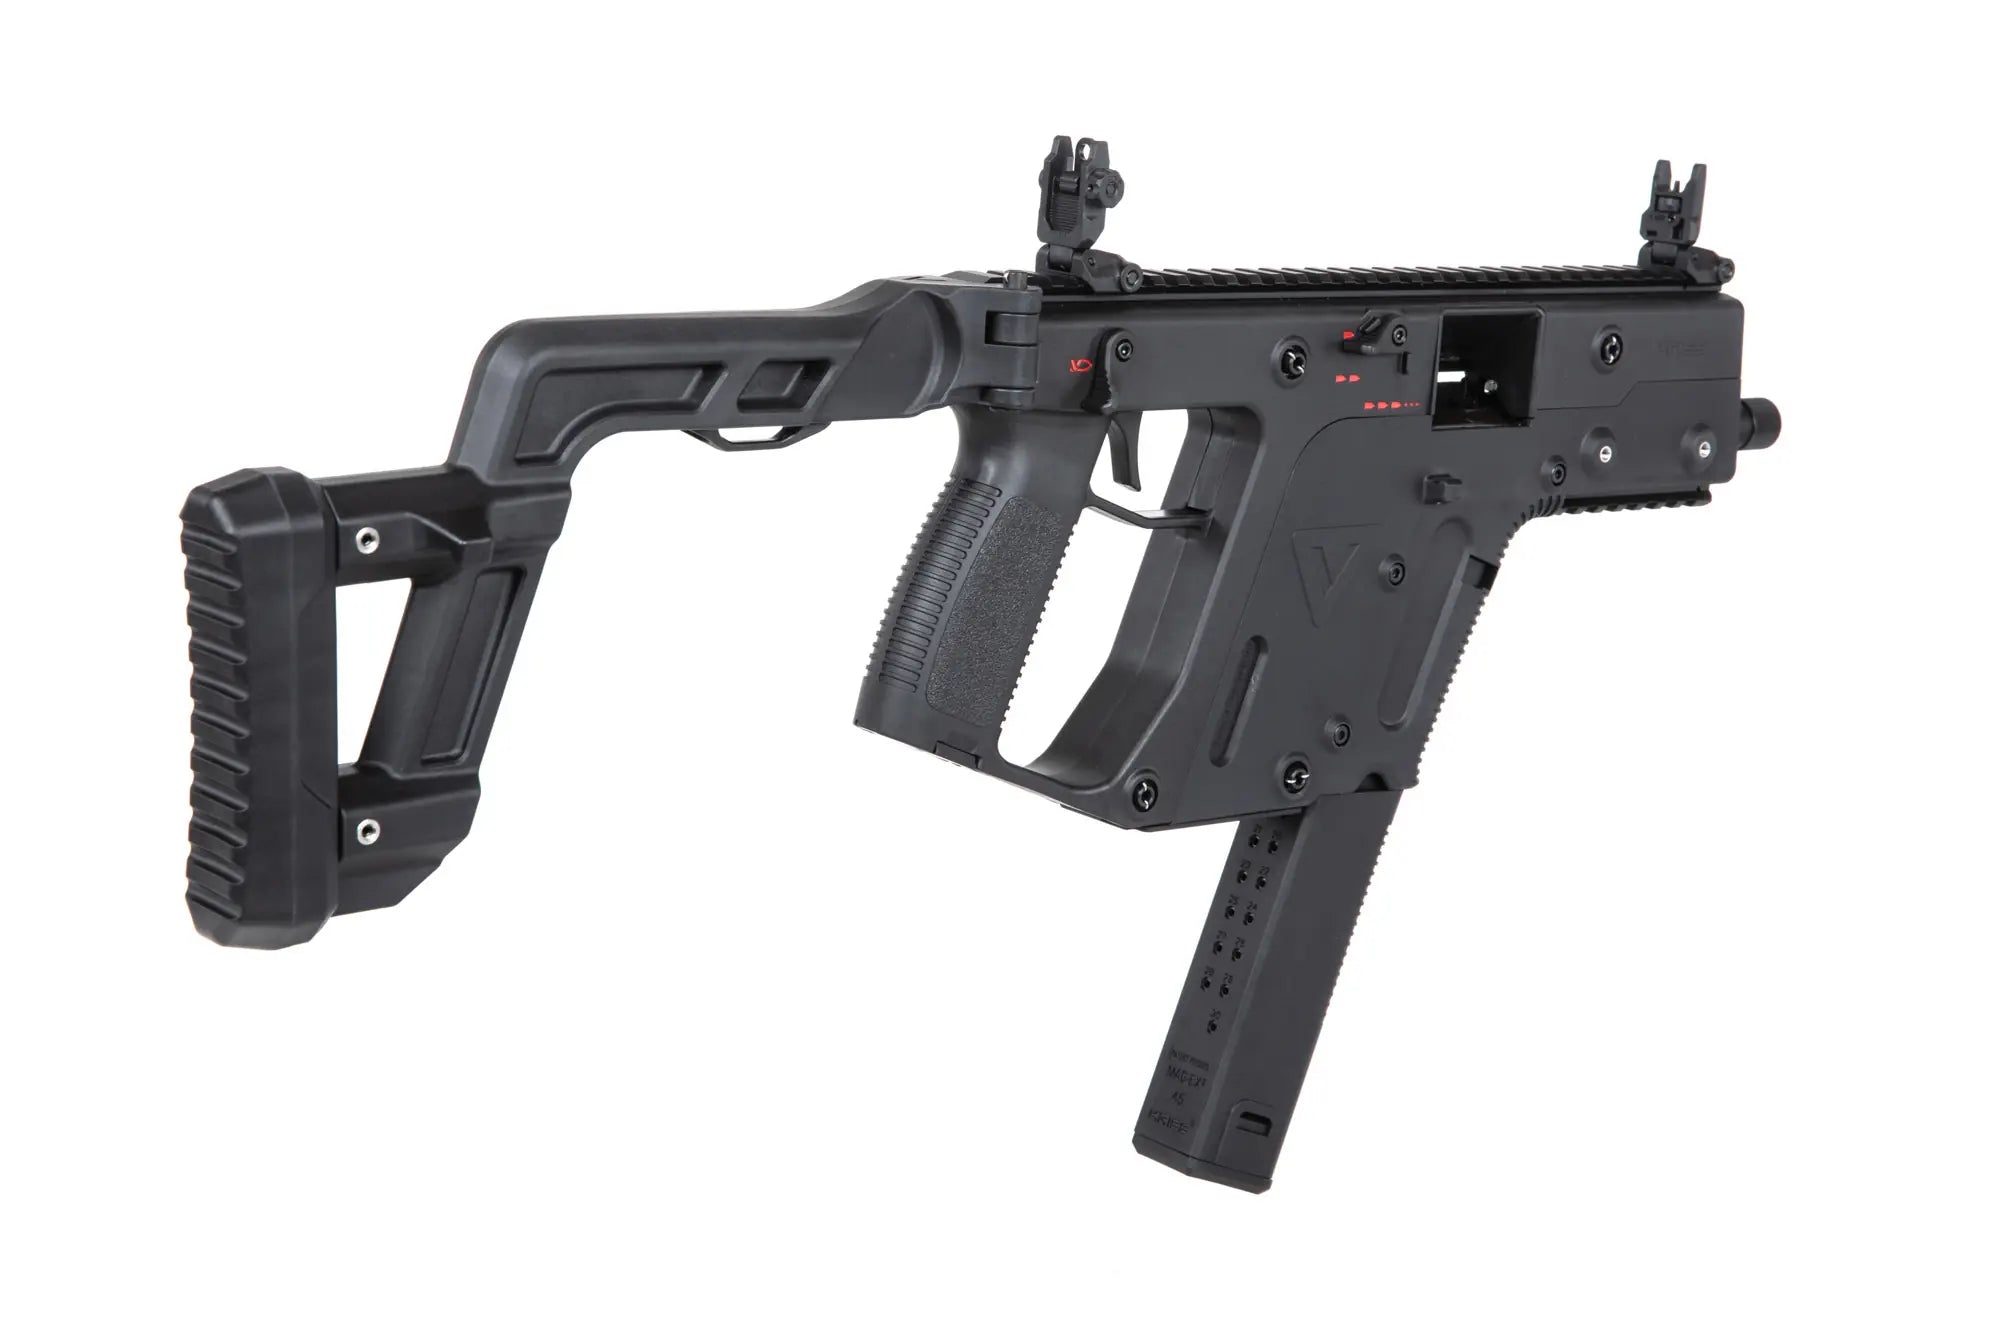 Krytac Kriss Vector GBB submachine airsoft gun-2